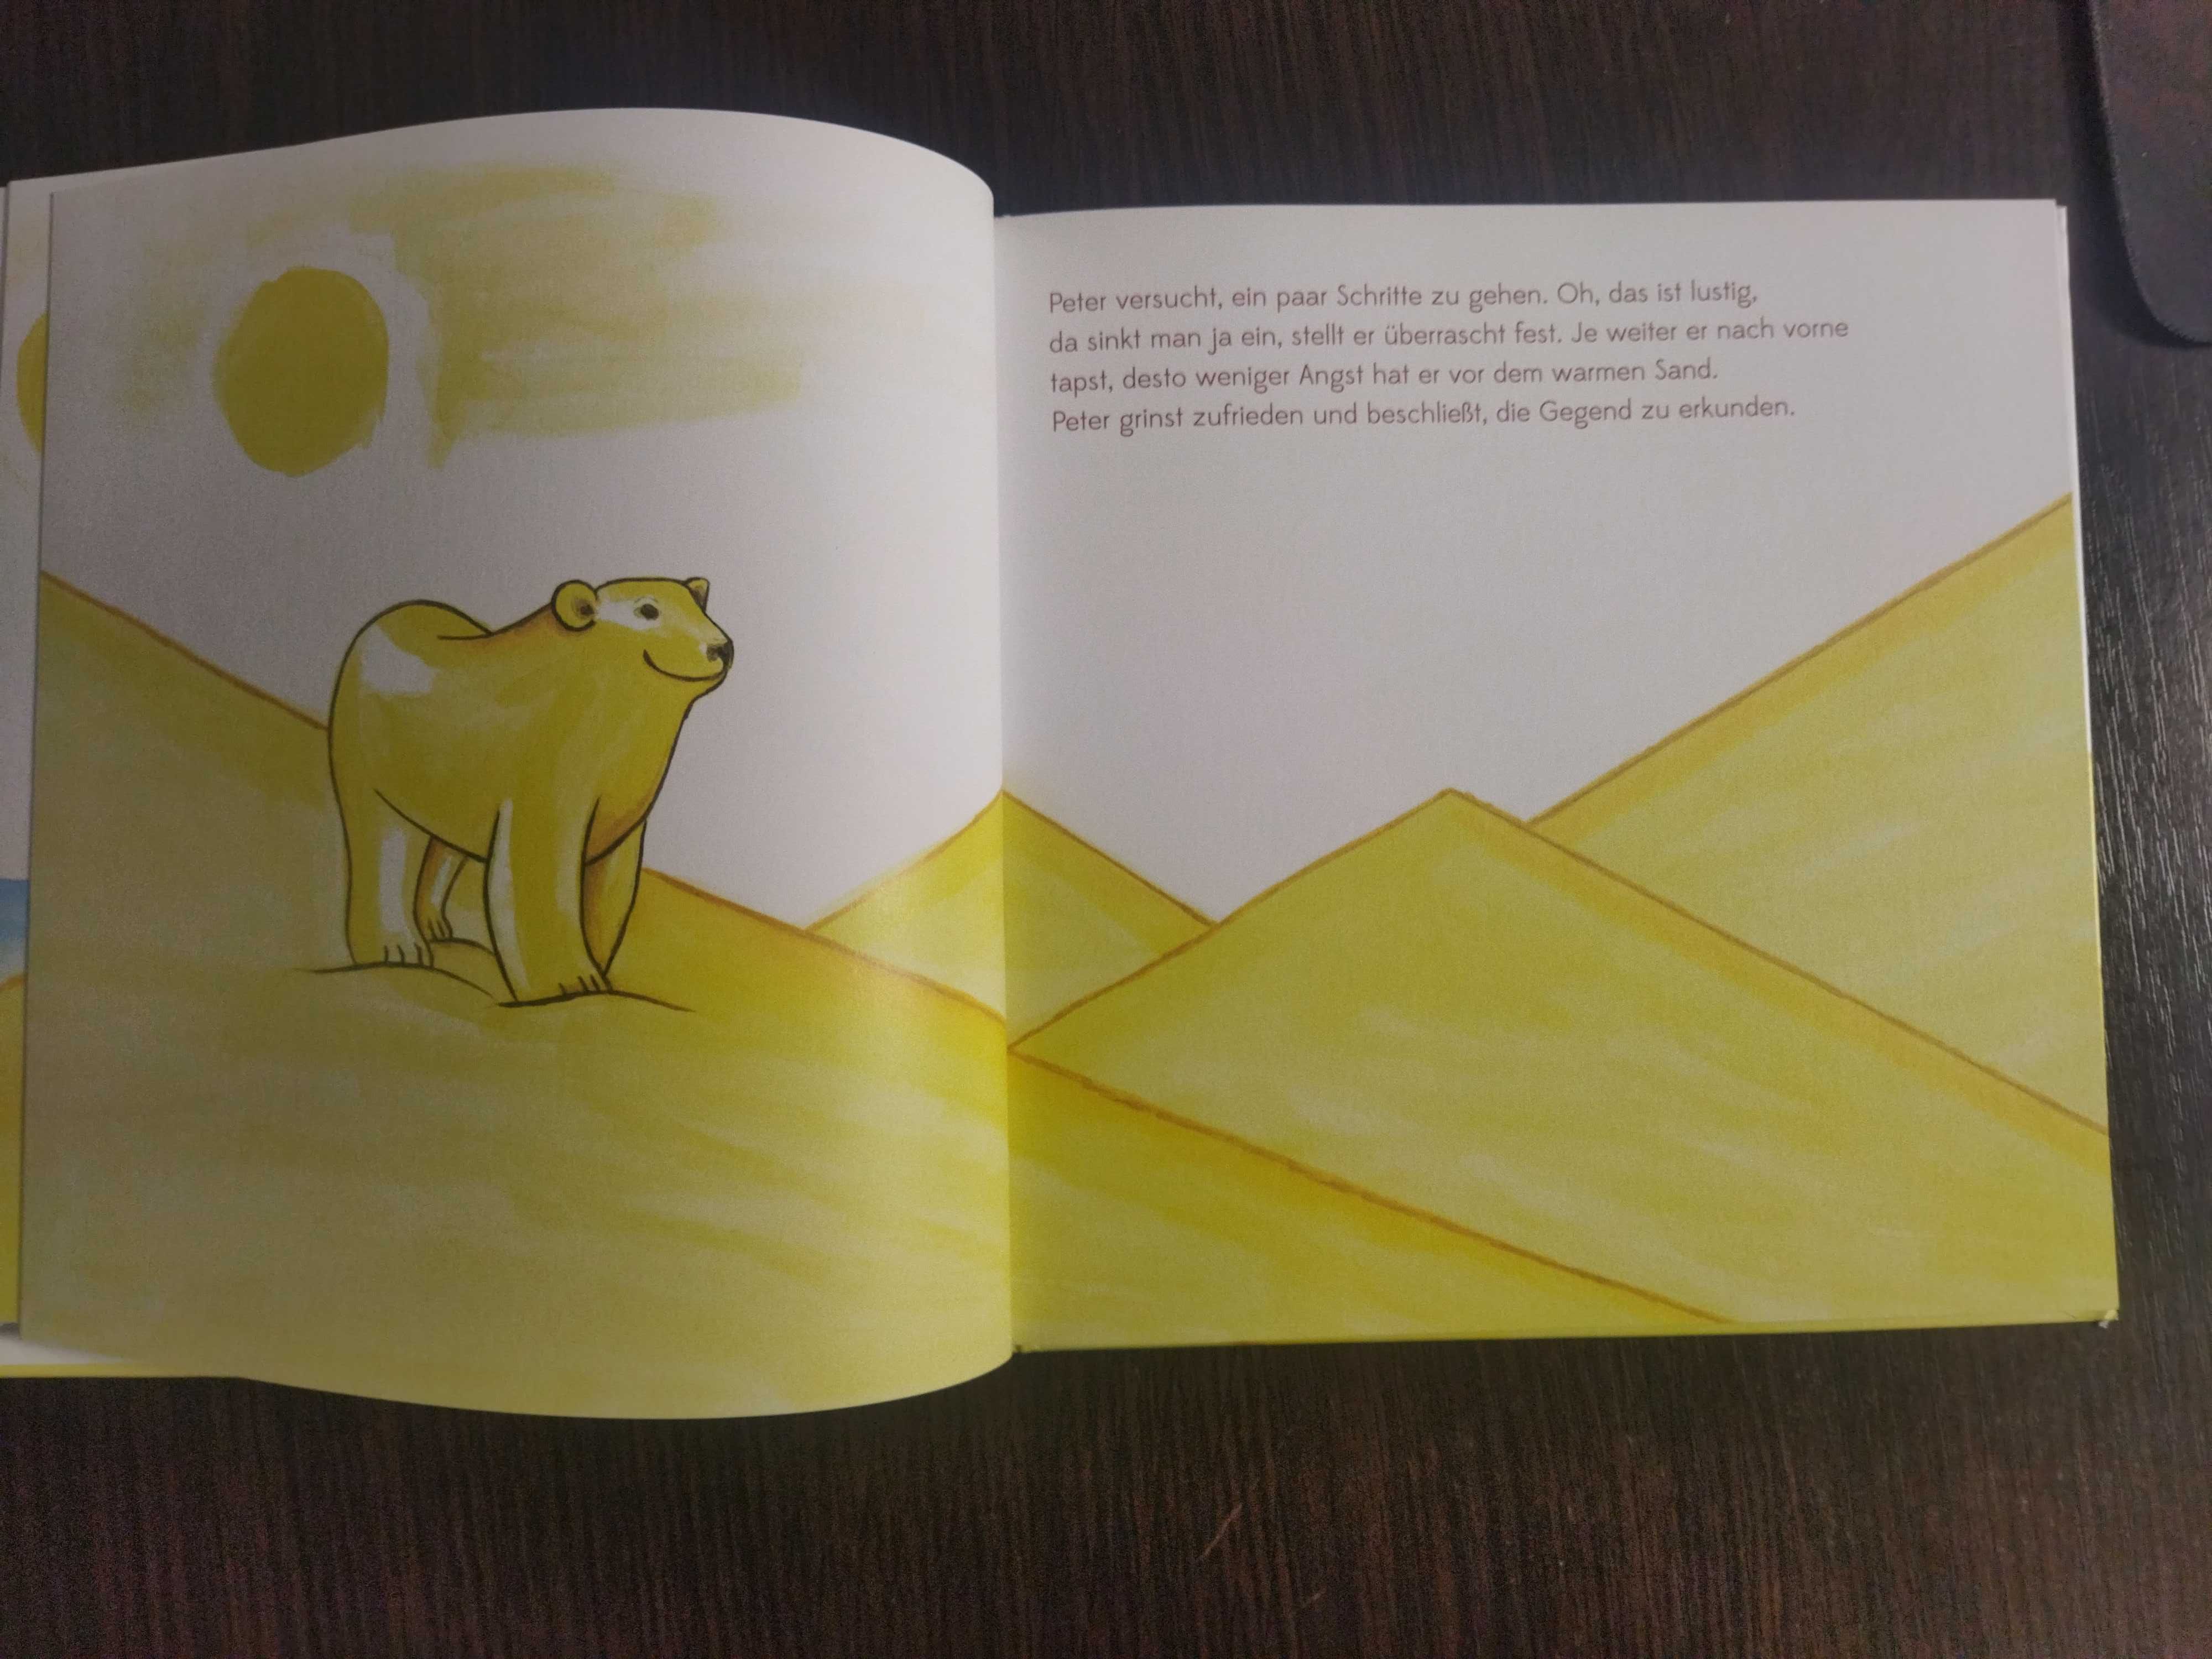 Книга для дітей на німецькій мові "Пустельний білий ведмідь"